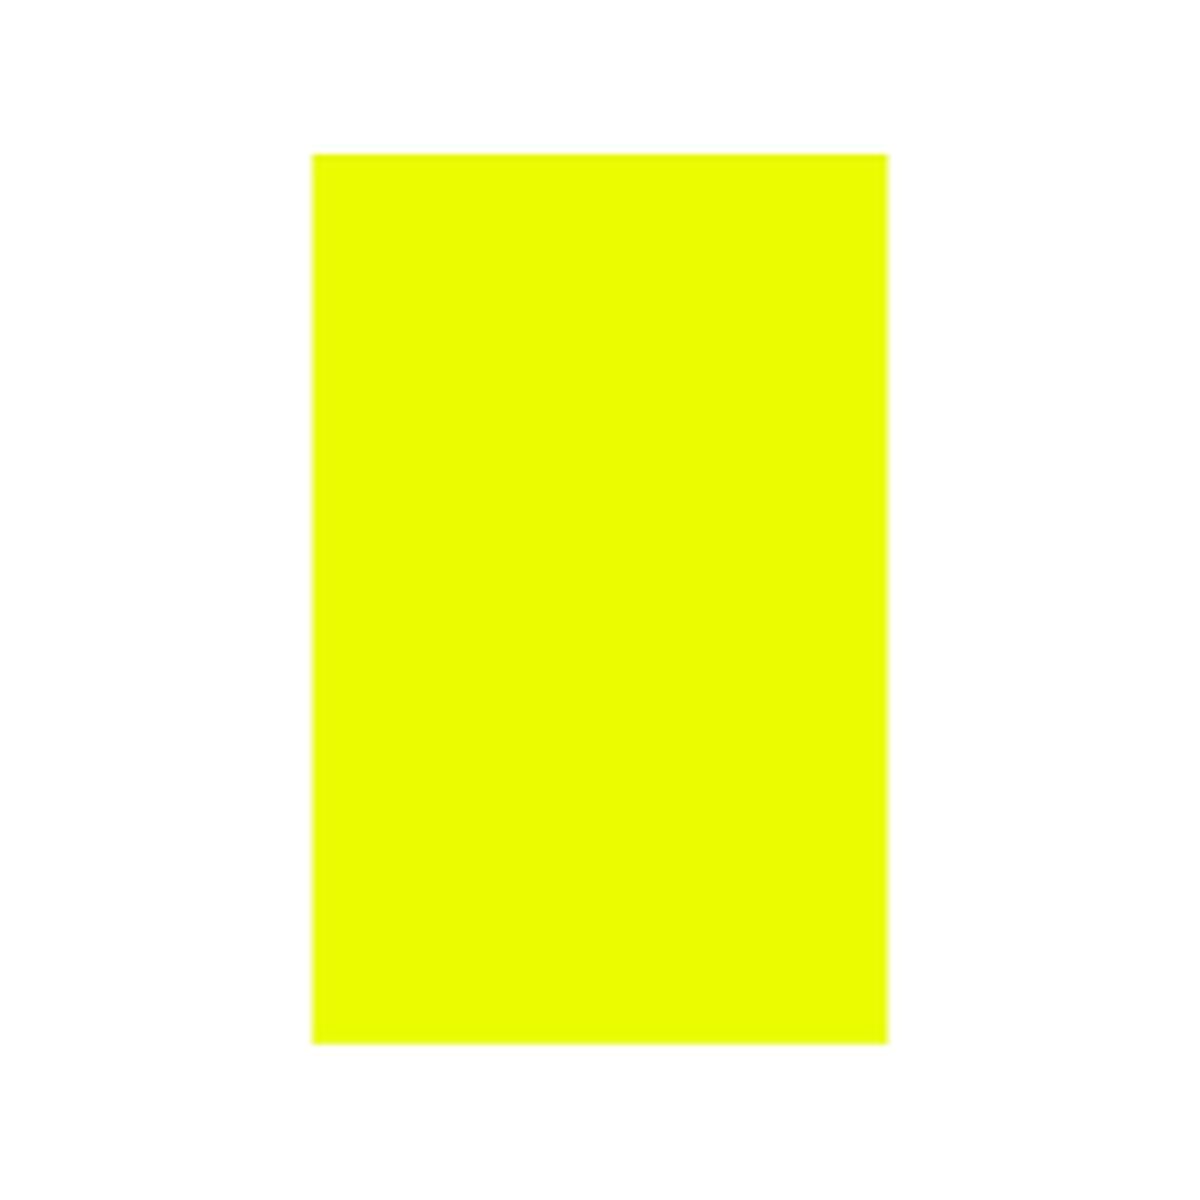 Osta tuote Kortit Iris Fluoresoiva Keltainen verkkokaupastamme Korhone: Lelut & Asut 20% alennuksella koodilla VIIKONLOPPU